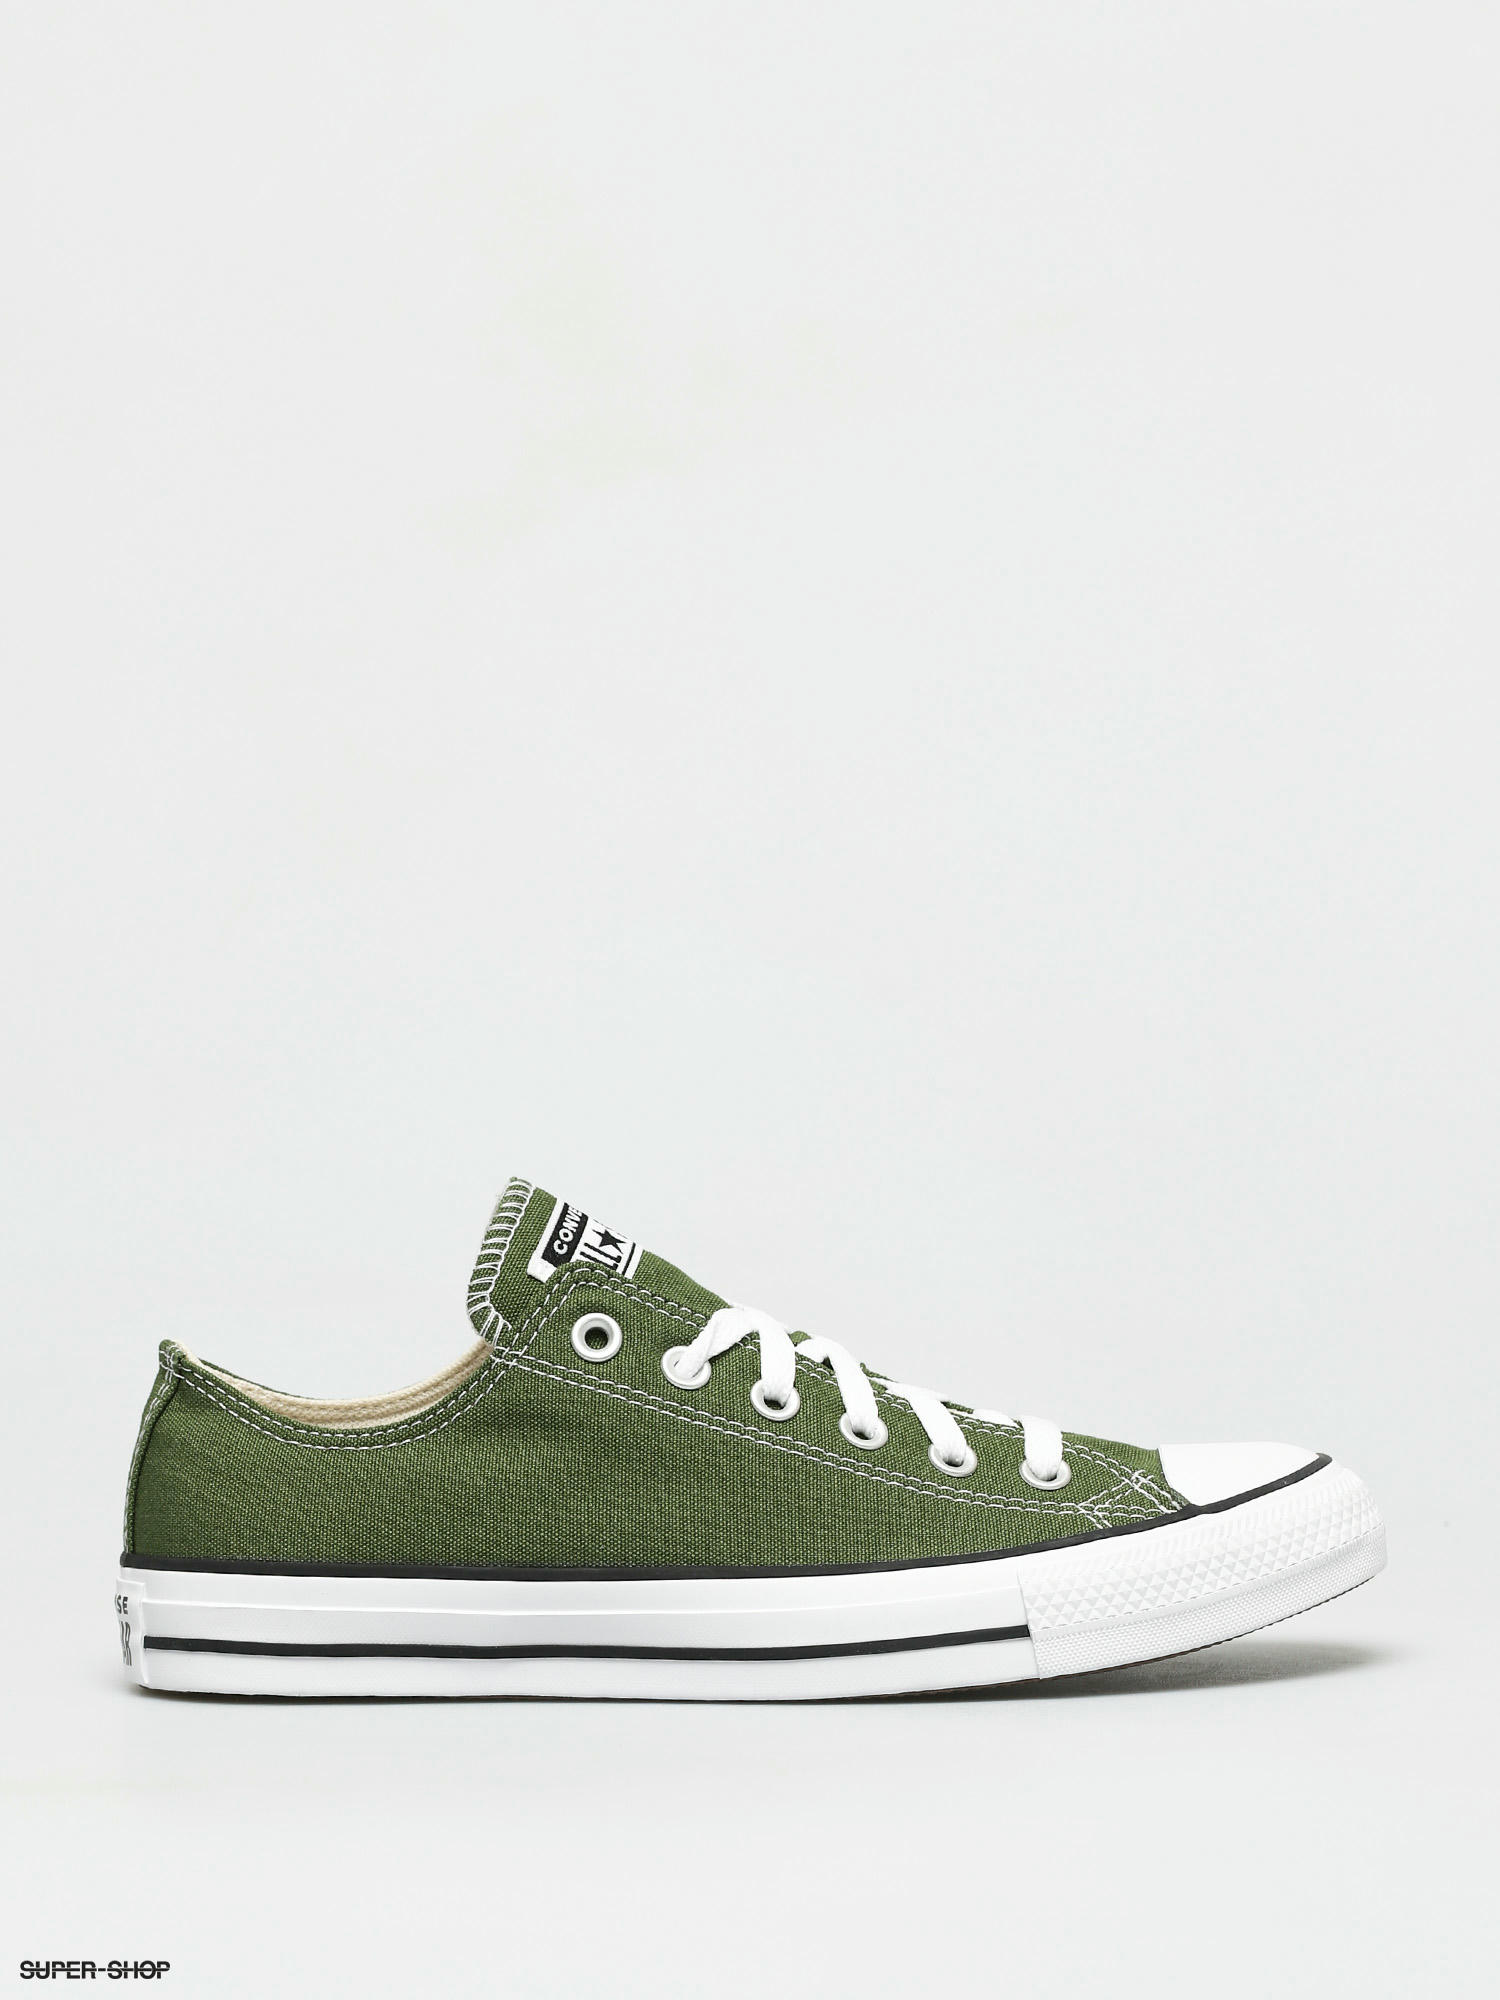 converse chucks green